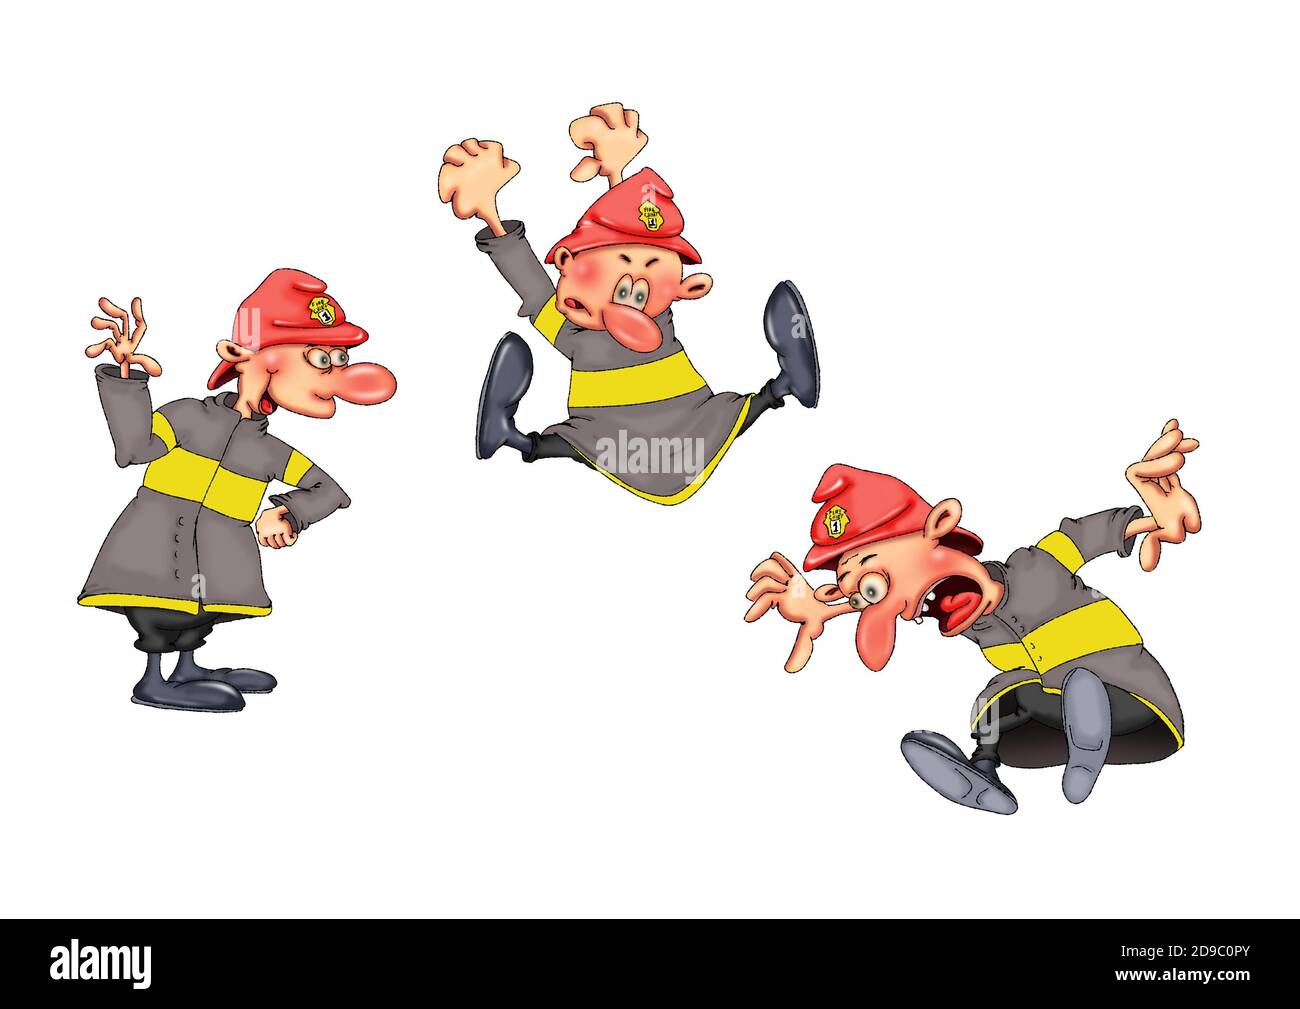 Feuerwehrleute in verschiedenen lustigen Posen. Abbildung auf weißem Hintergrund. Stockfoto